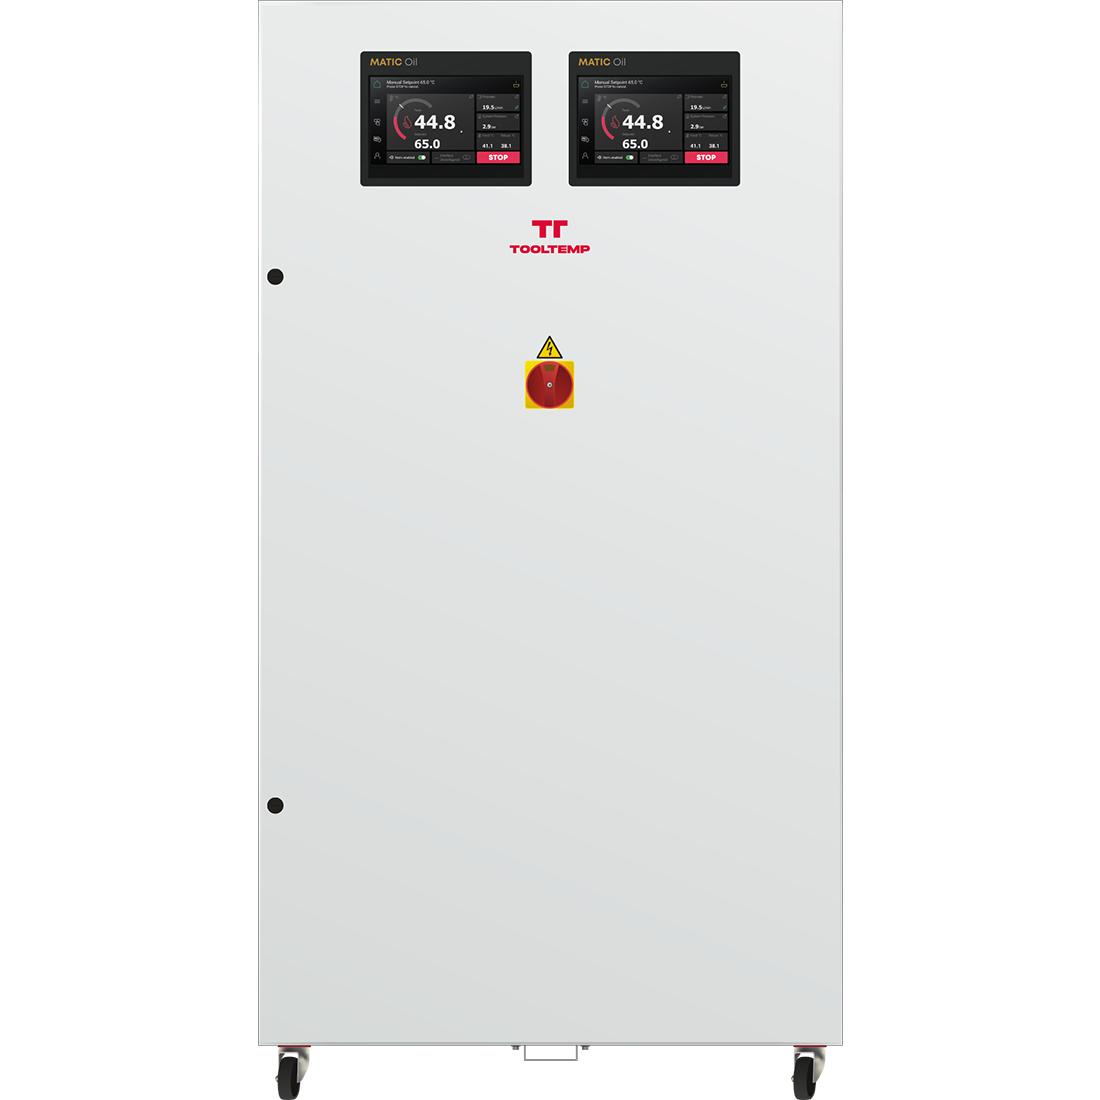 Tool-Temp - Kızgın yağlı sıcaklık kontrol üniteleri - MATIC Oil 360/2 16 kW 